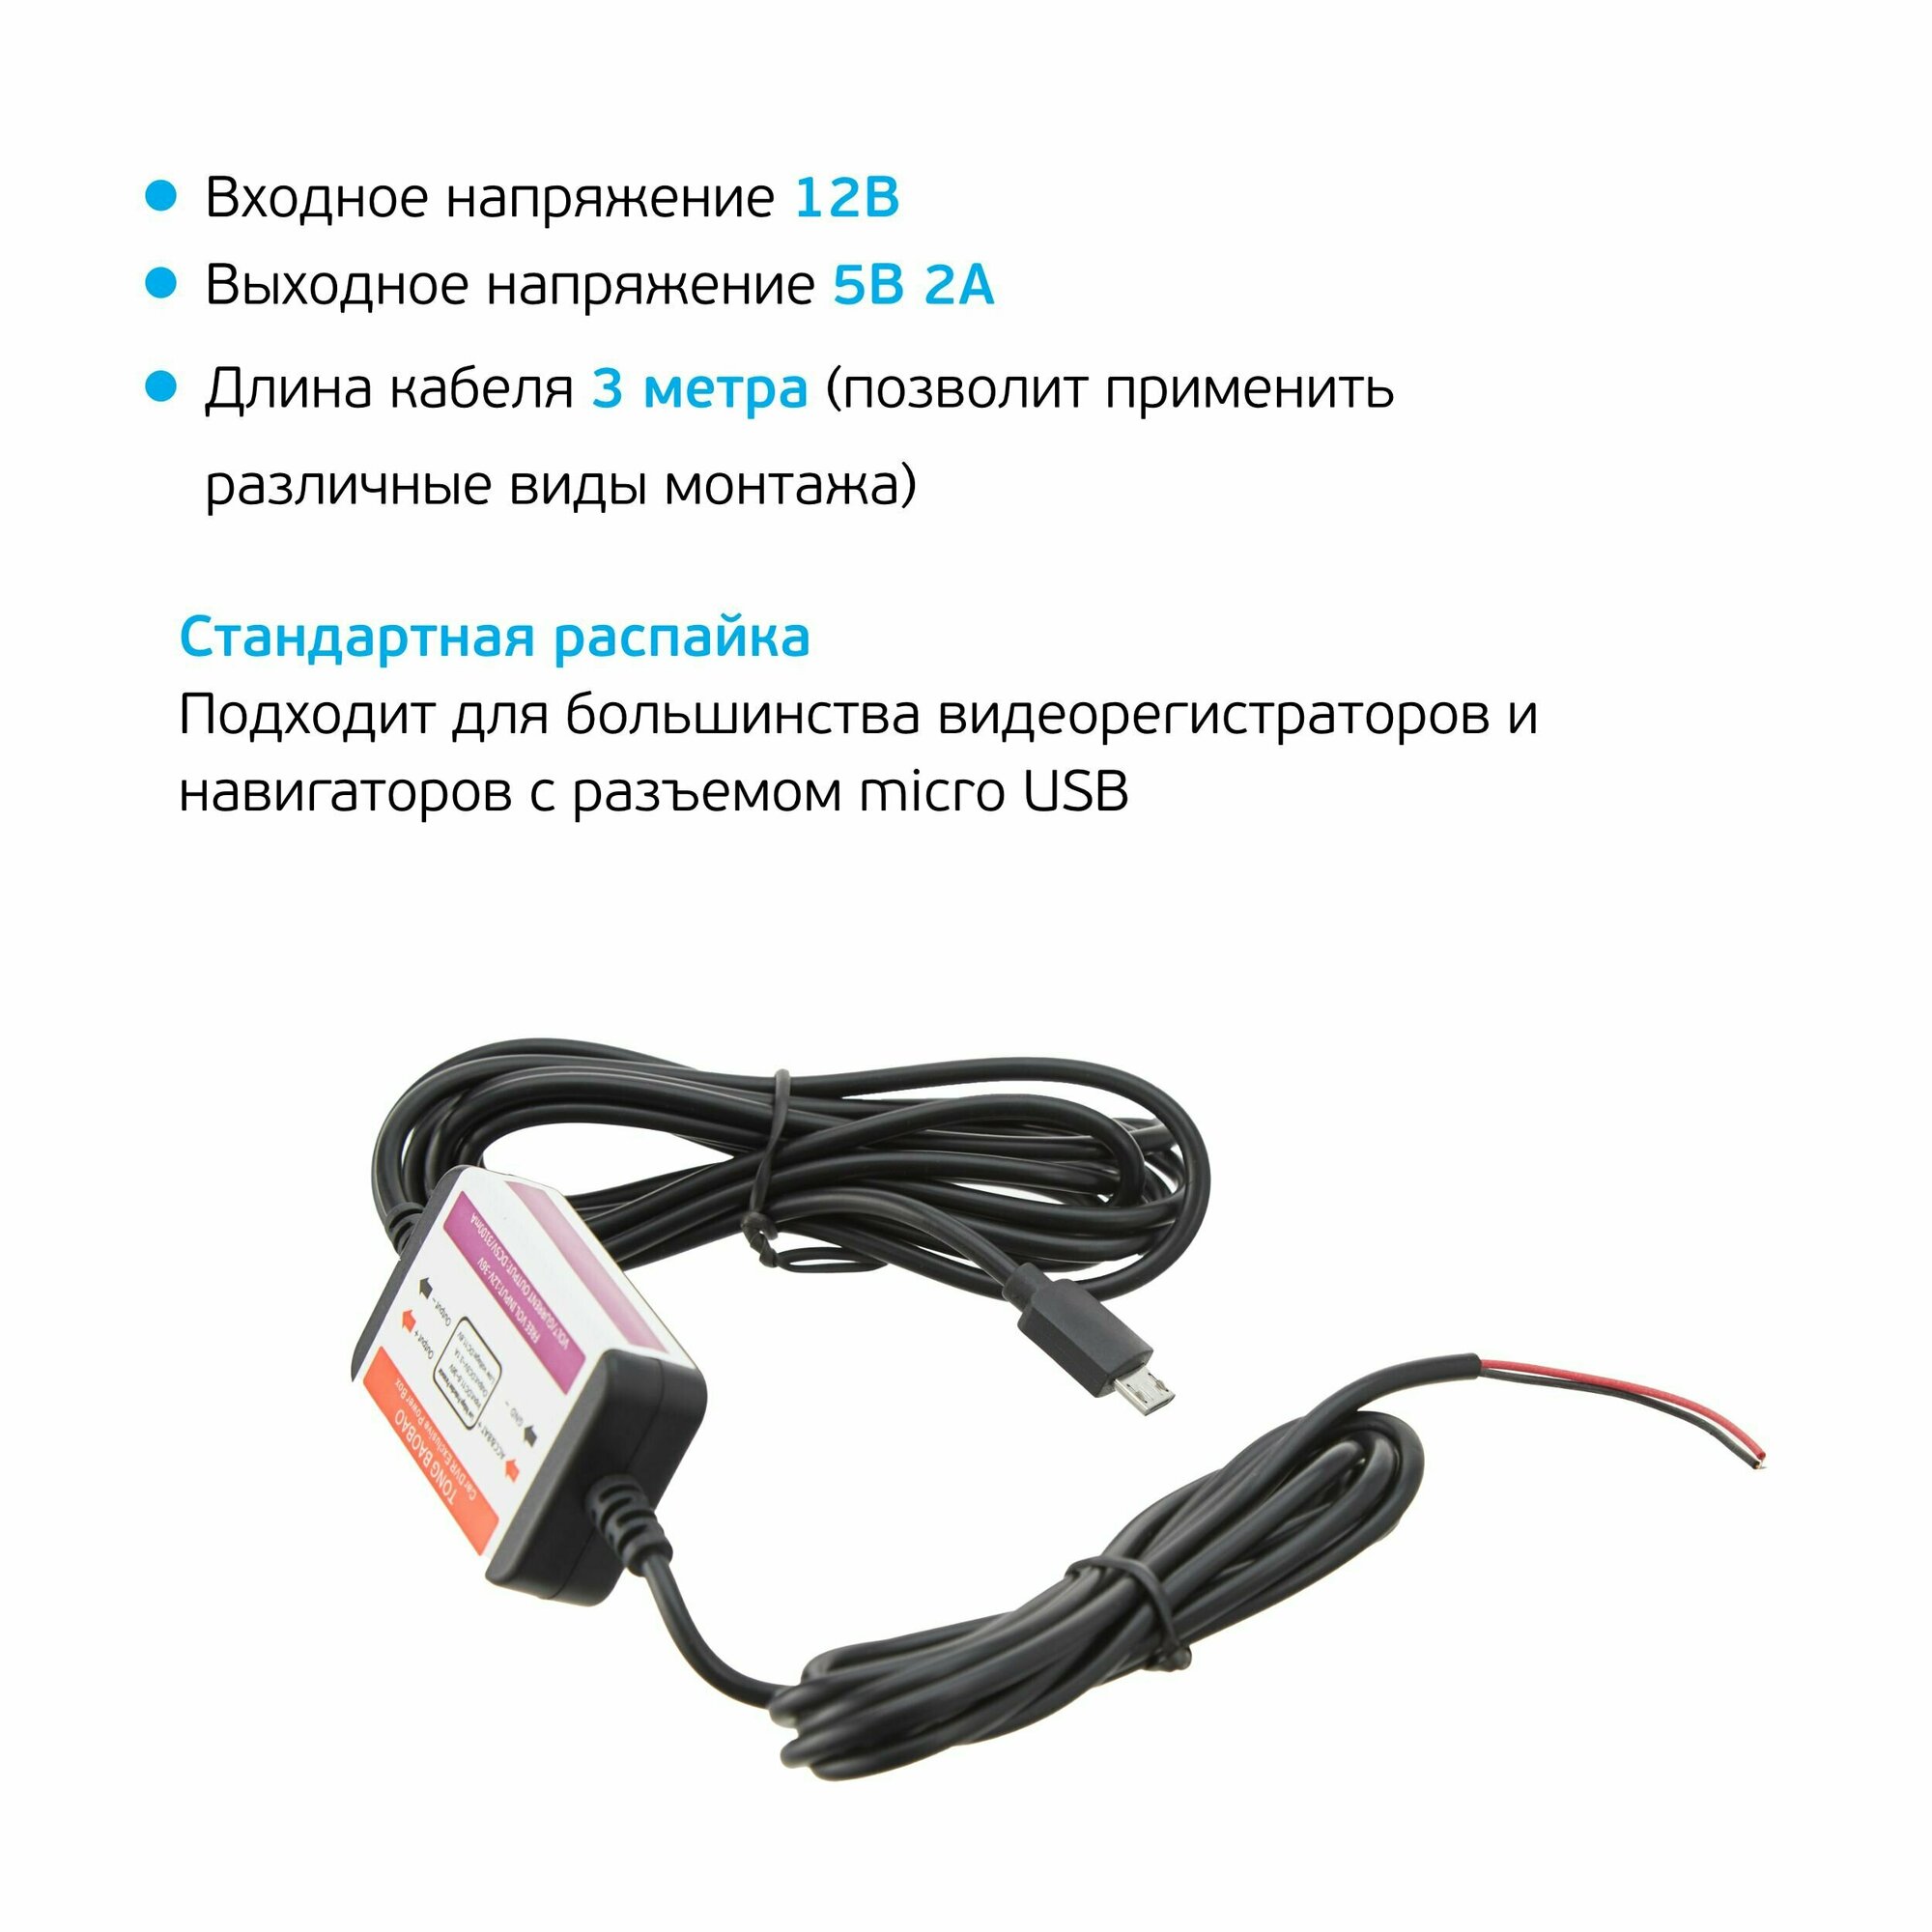 Провод для скрытой установки видеорегистратора micro USB 5V (3м)